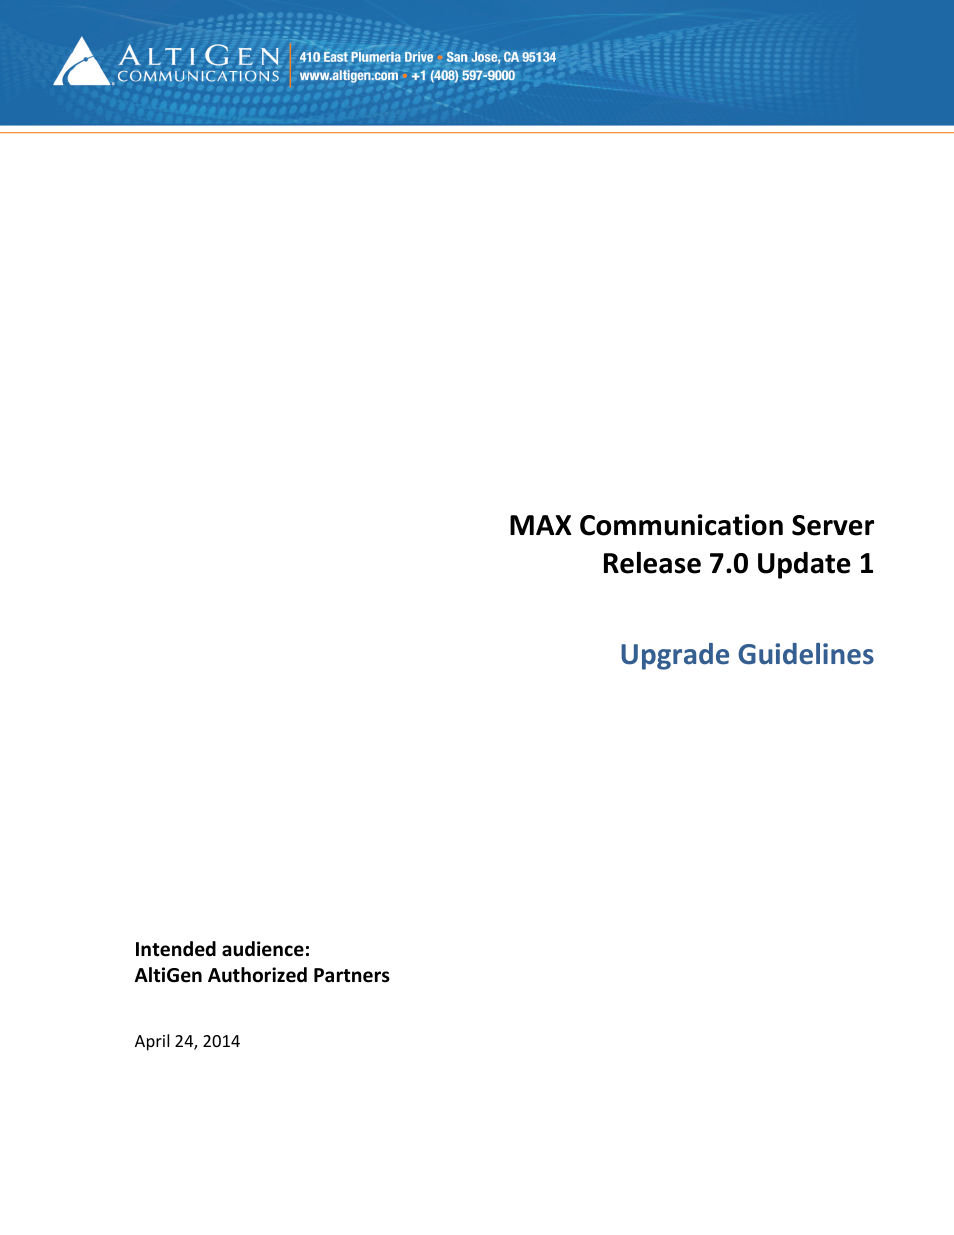 MAXCS 7.0 Update 1 Upgrade Guidelines